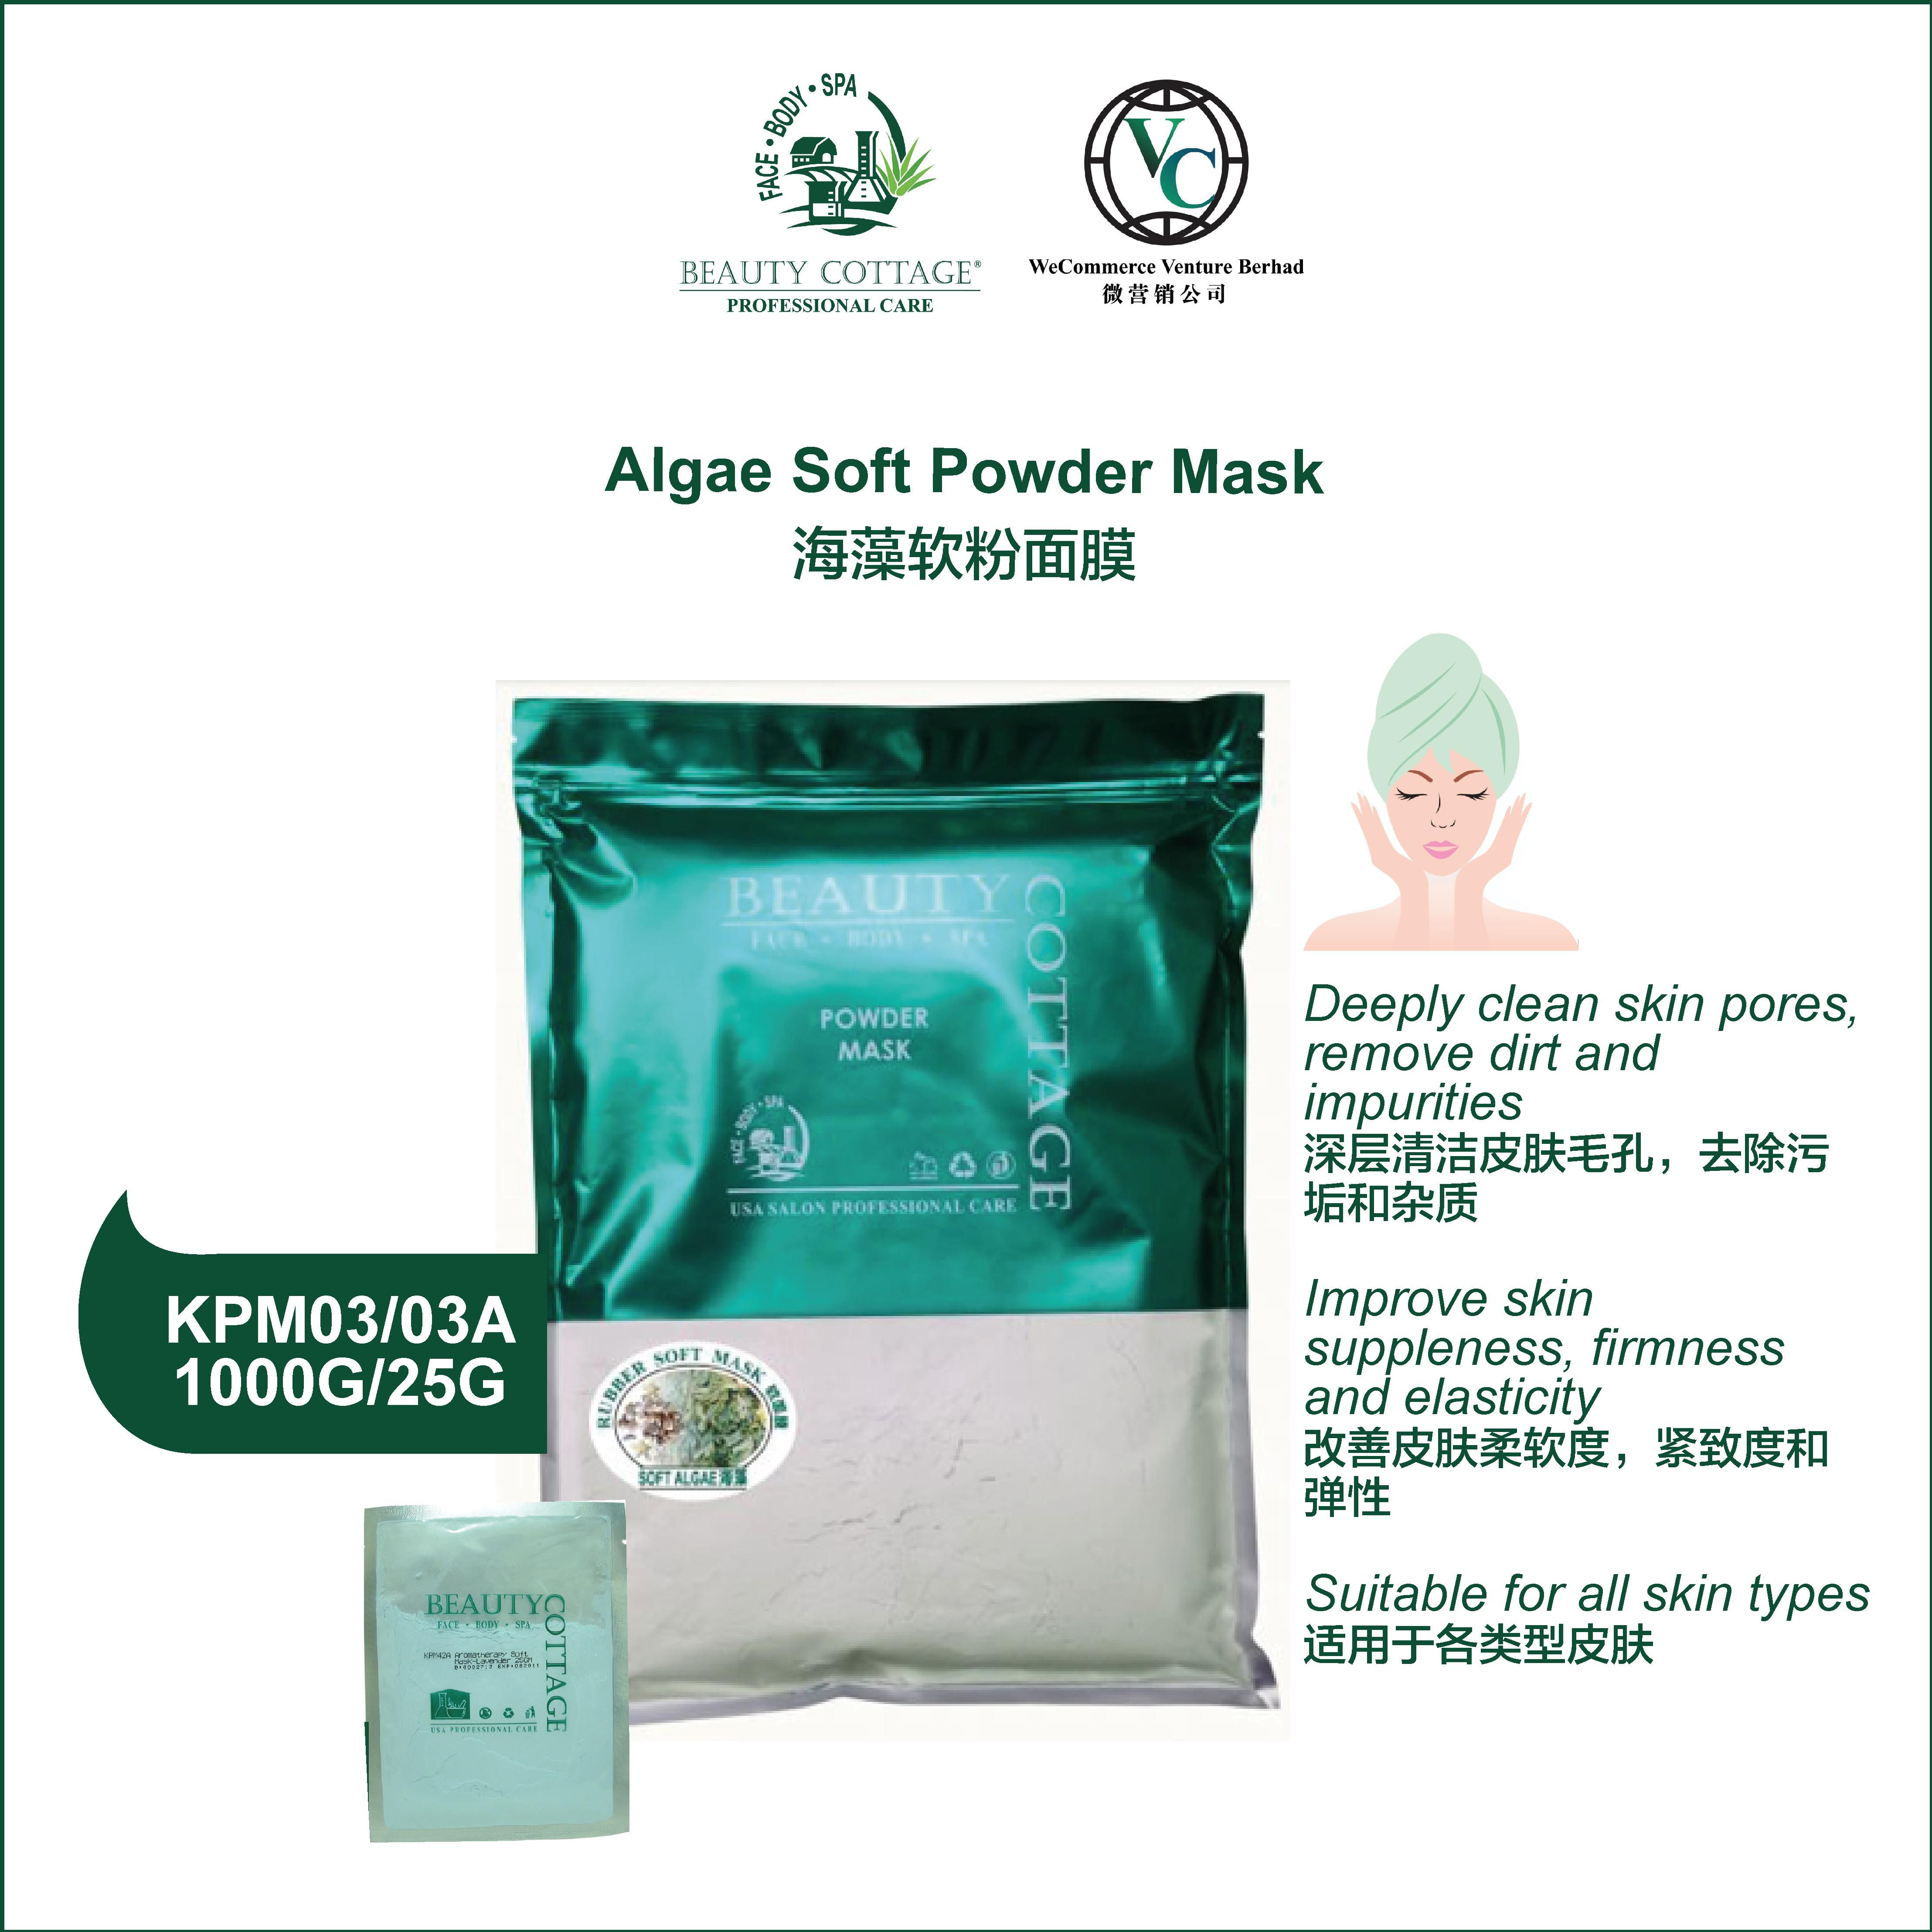 Beauty Cottage Algae Soft Powder Mask